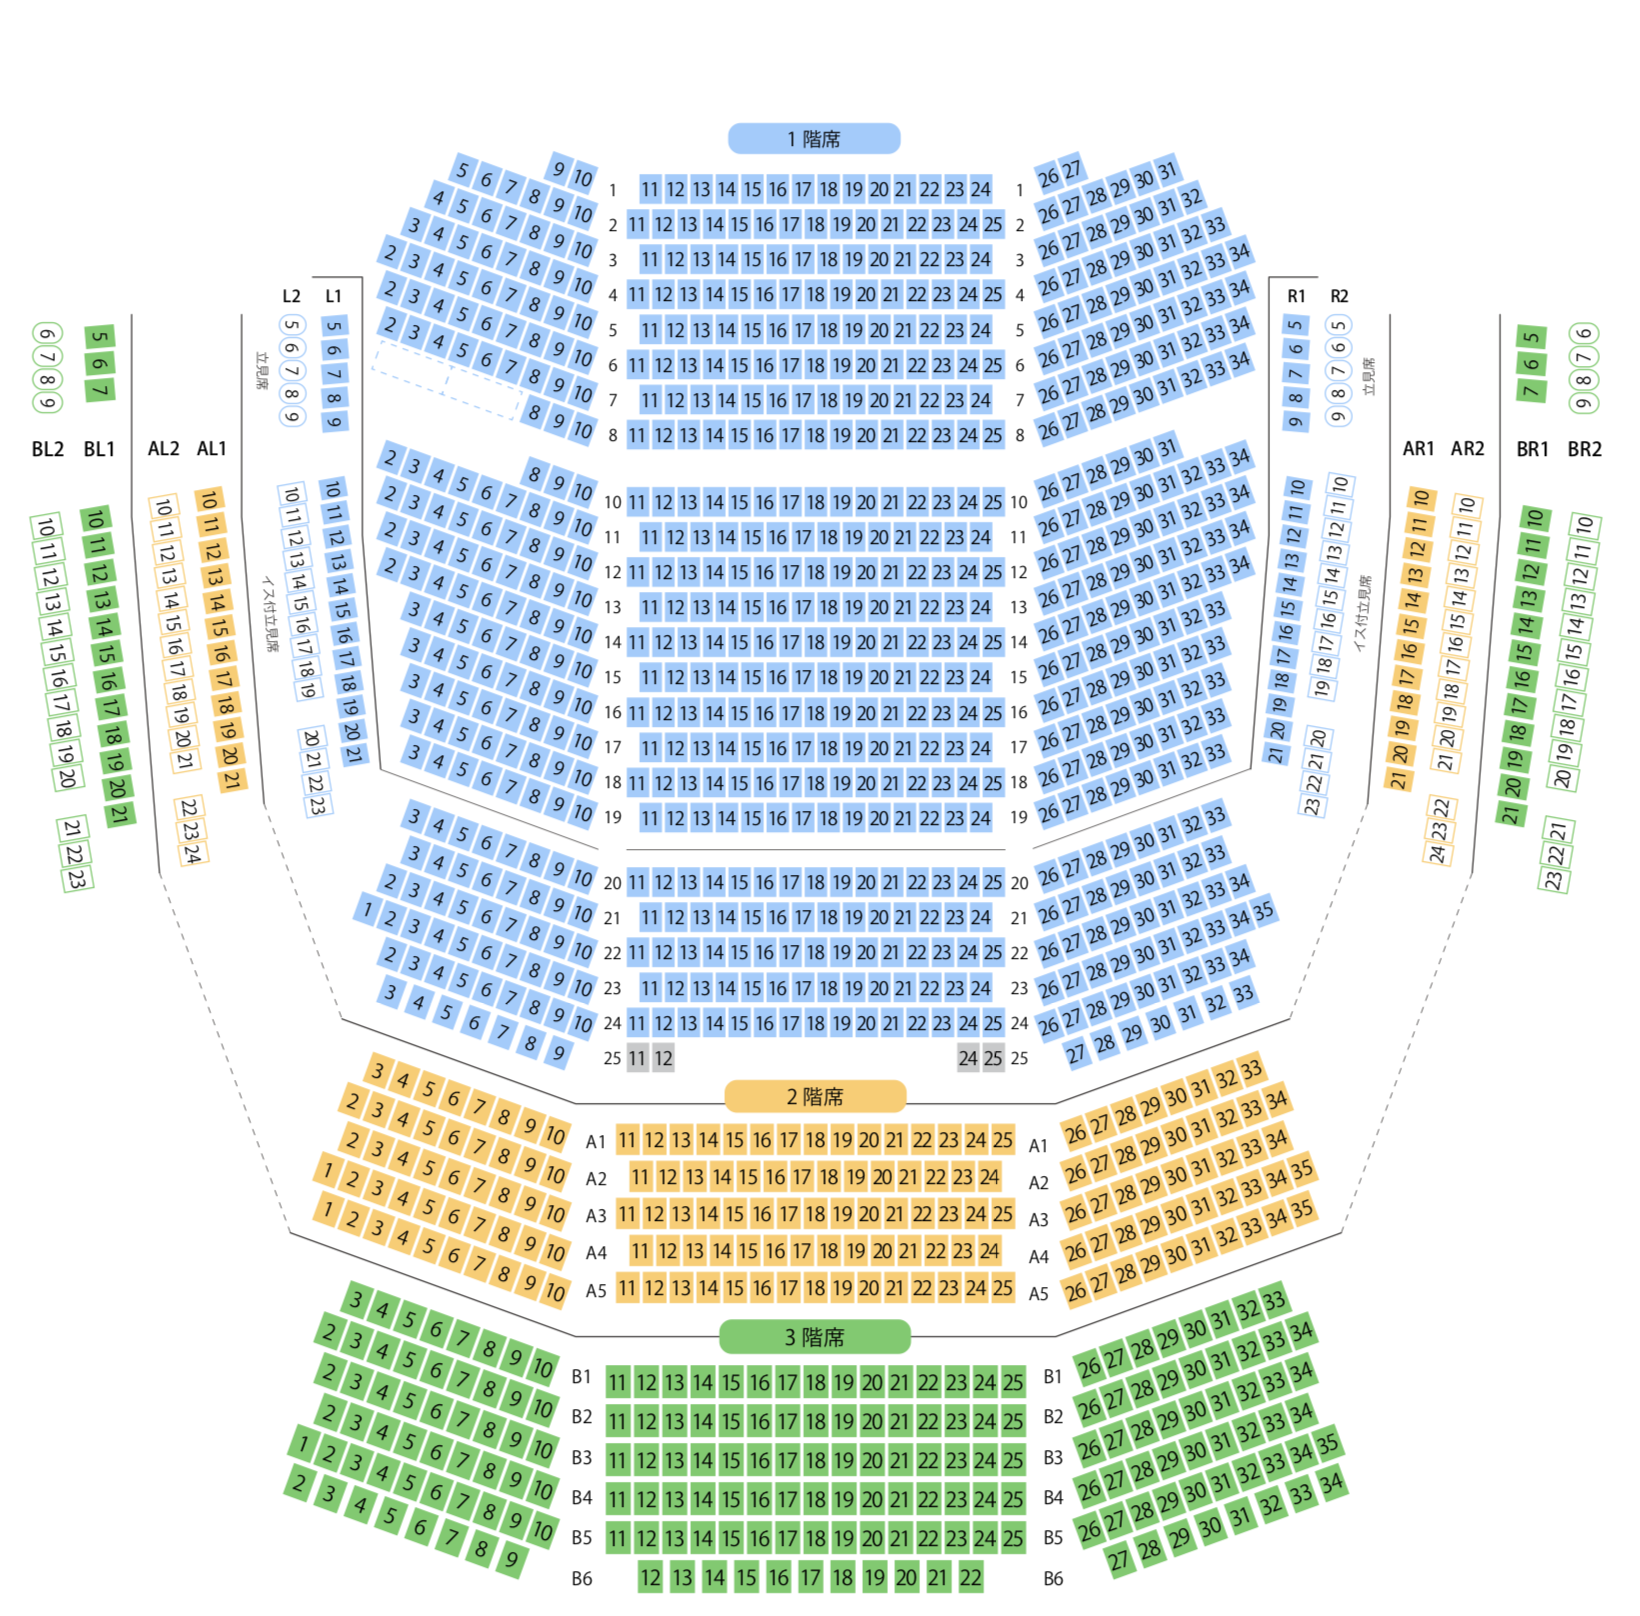 KAAT神奈川芸術劇場の座席表の画像